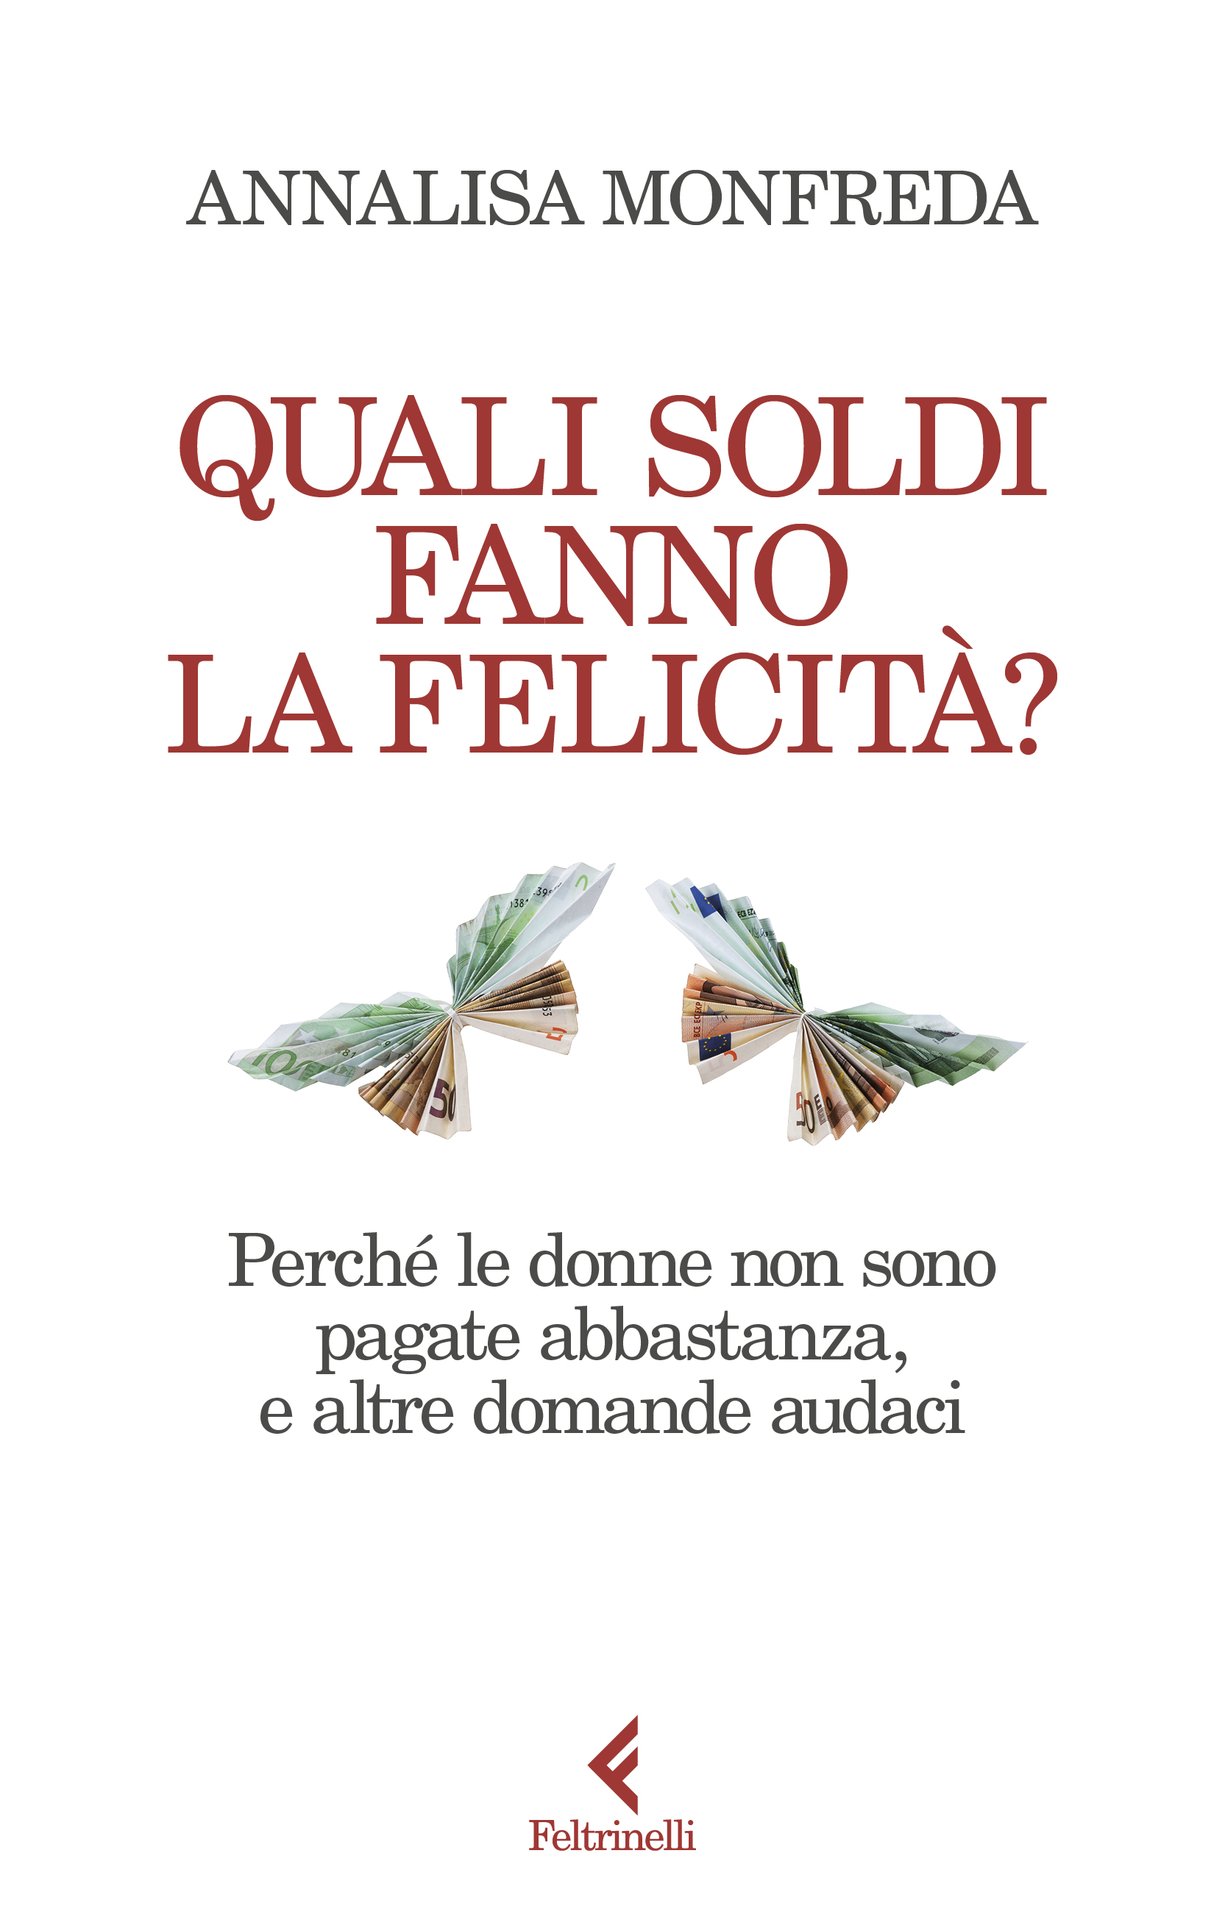 Annalisa Monfreda presenta "Quali soldi fanno la felicità?" alla libreria Colibrì, Milano